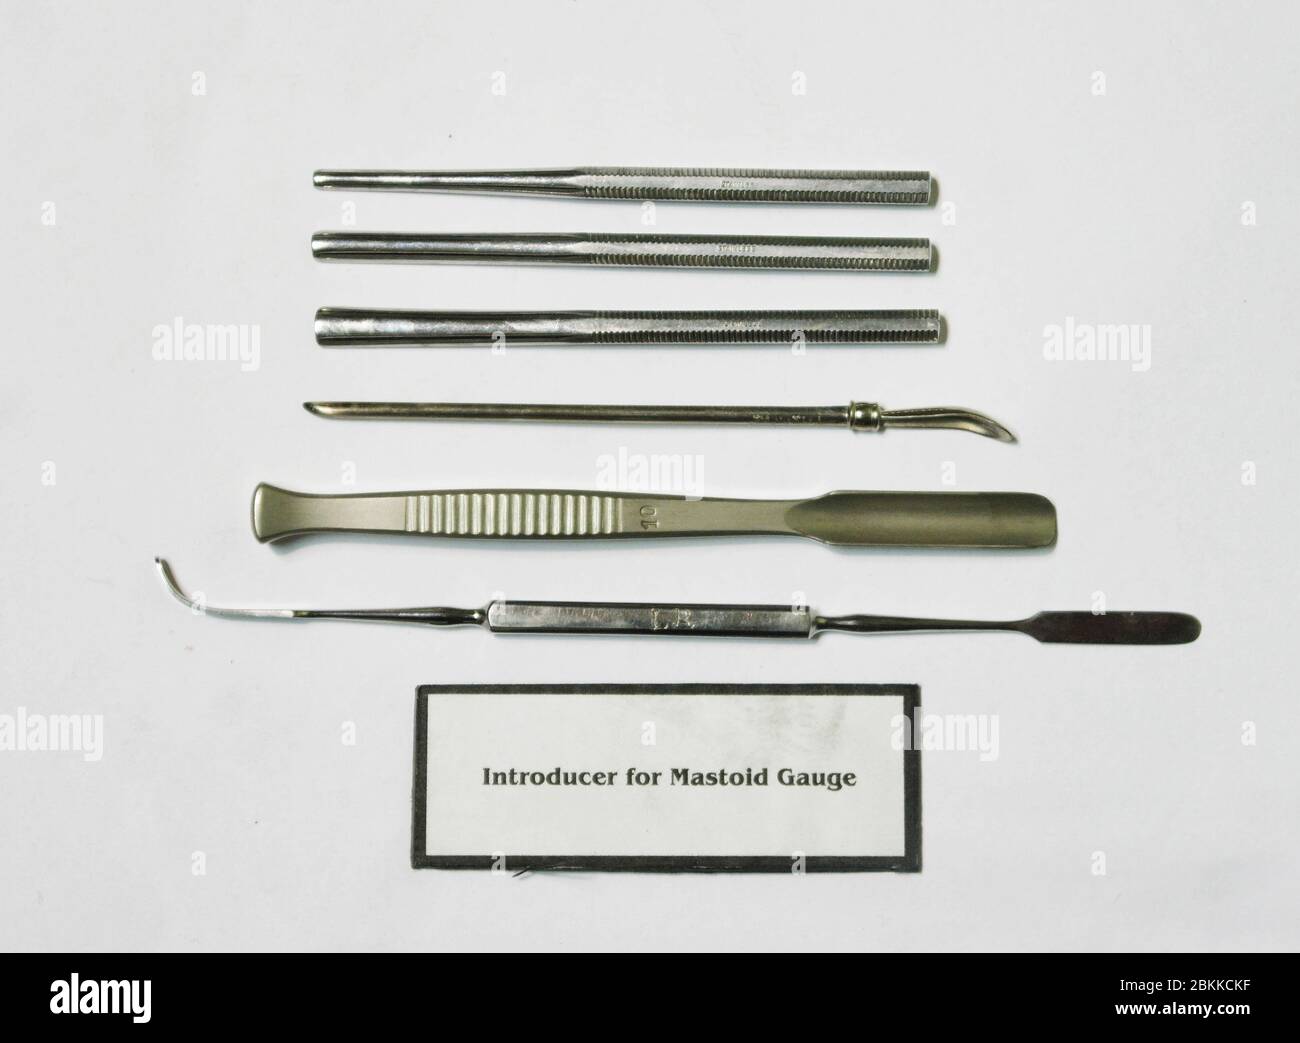 Un ensemble d'outils médicaux vintage, un introducteur pour la gouge mastoïde. Banque D'Images